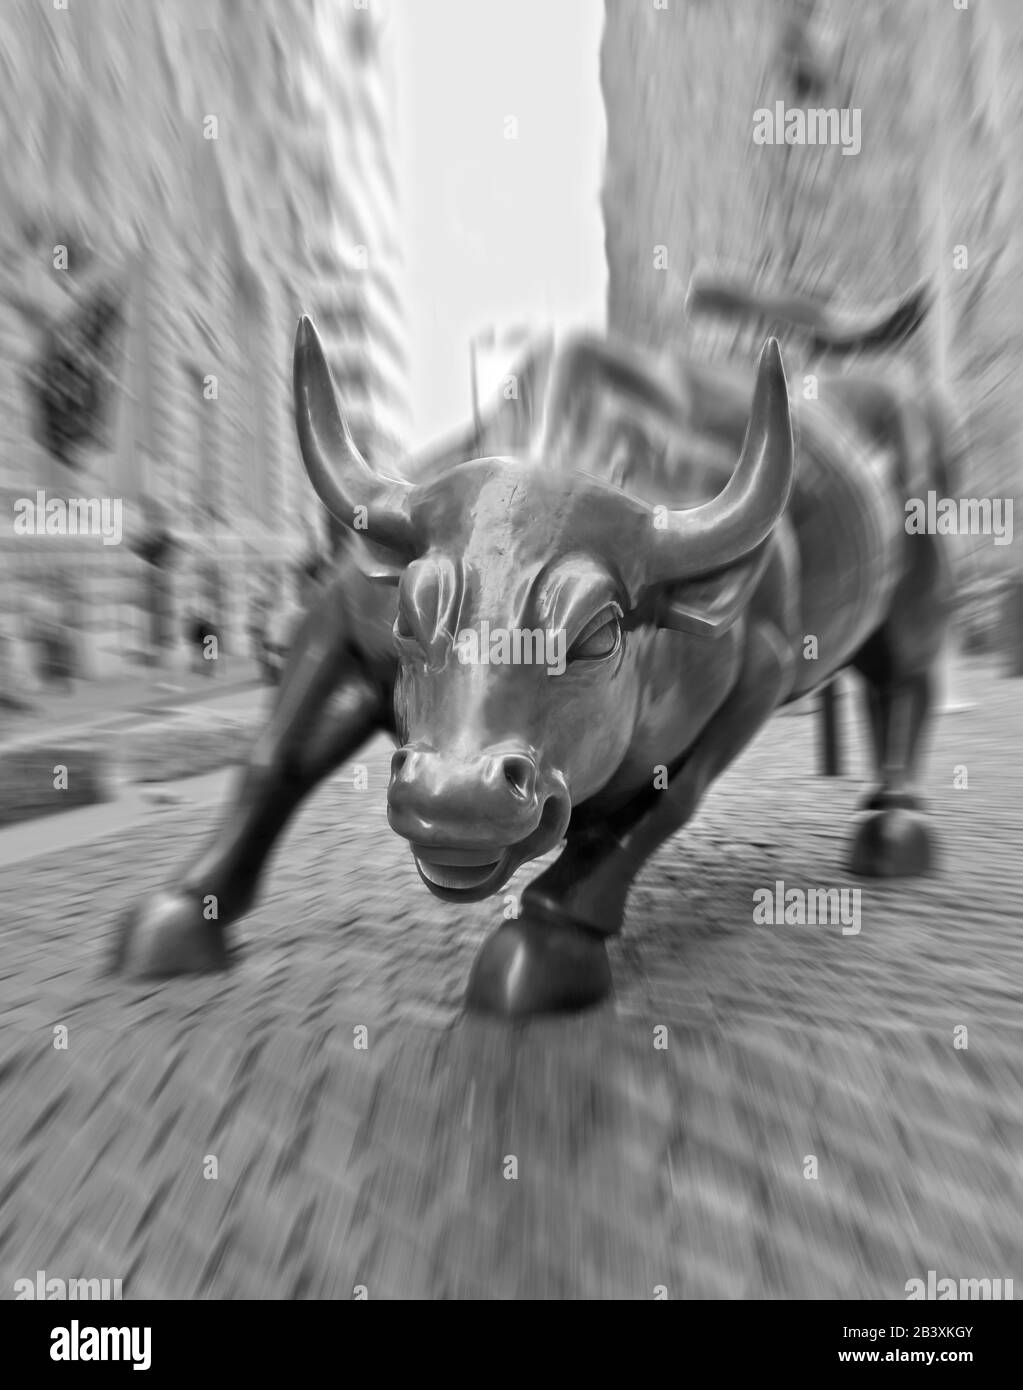 The Wall Street Bull in Lower Manhattan, New York, USA. Große Bronze-Skulptur von Arturo Di Modica. Das Gesicht von Bull ist scharf, wenn man mit Bewegung fotografiert Stockfoto